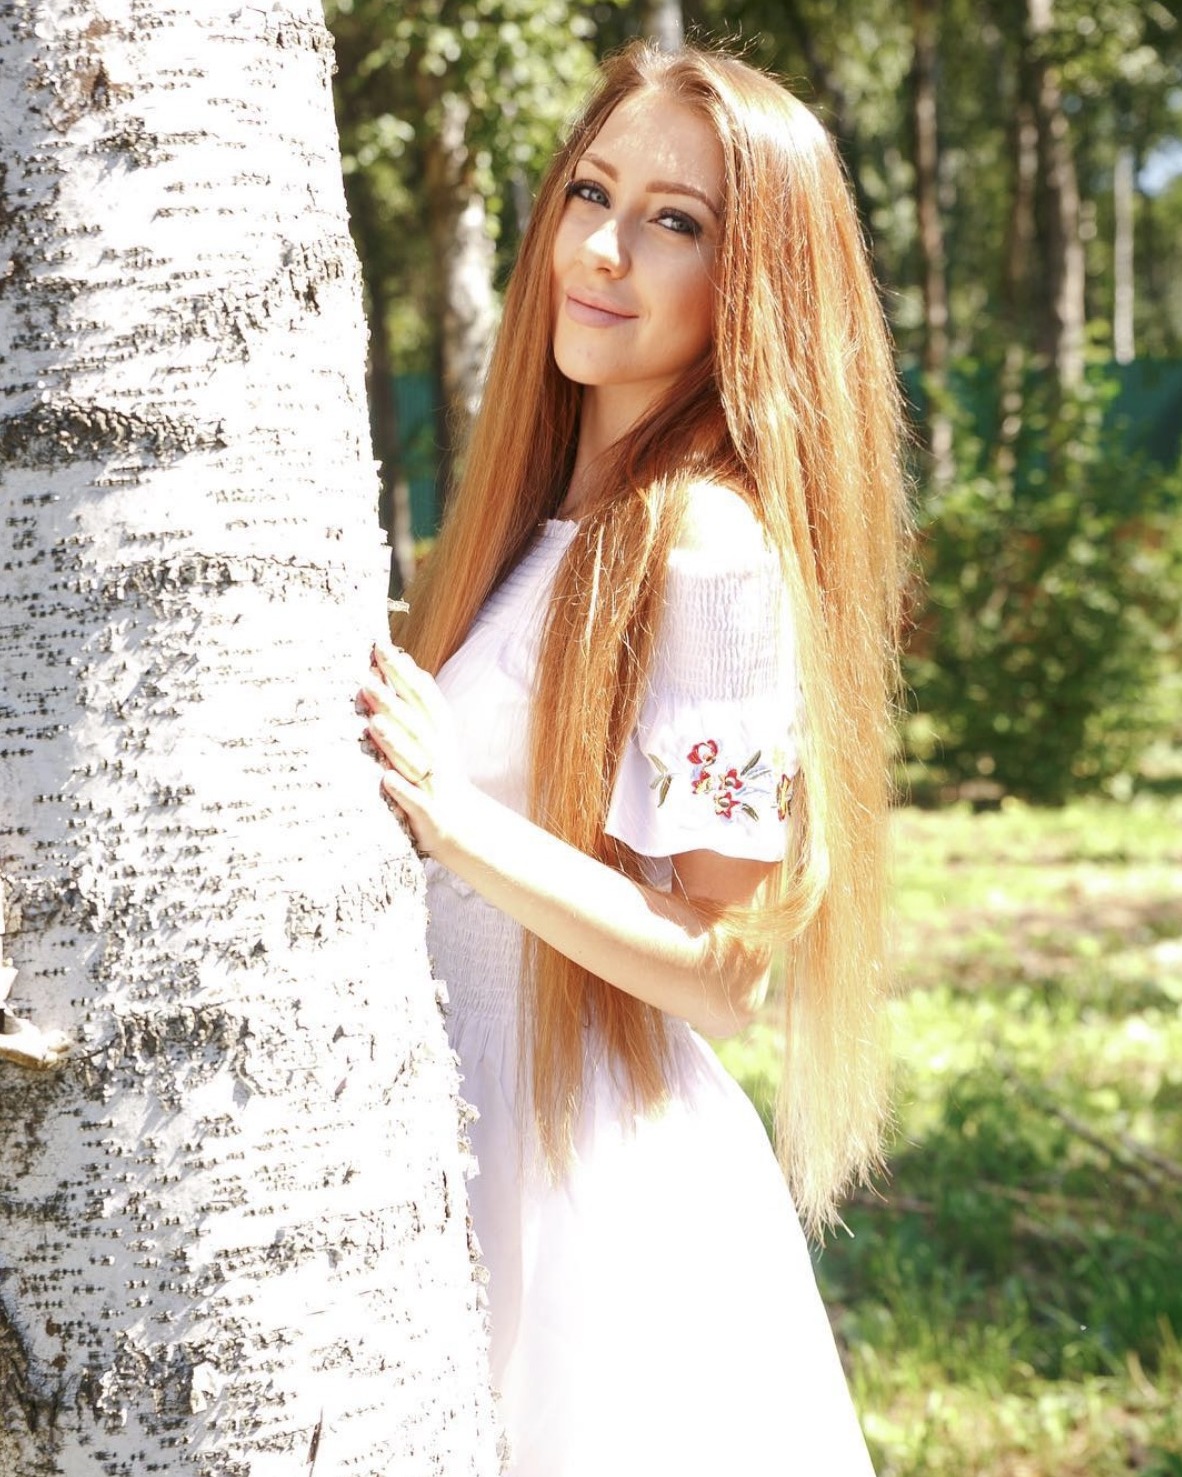 Алена Савкина выбыла c конкурса "Человек года"